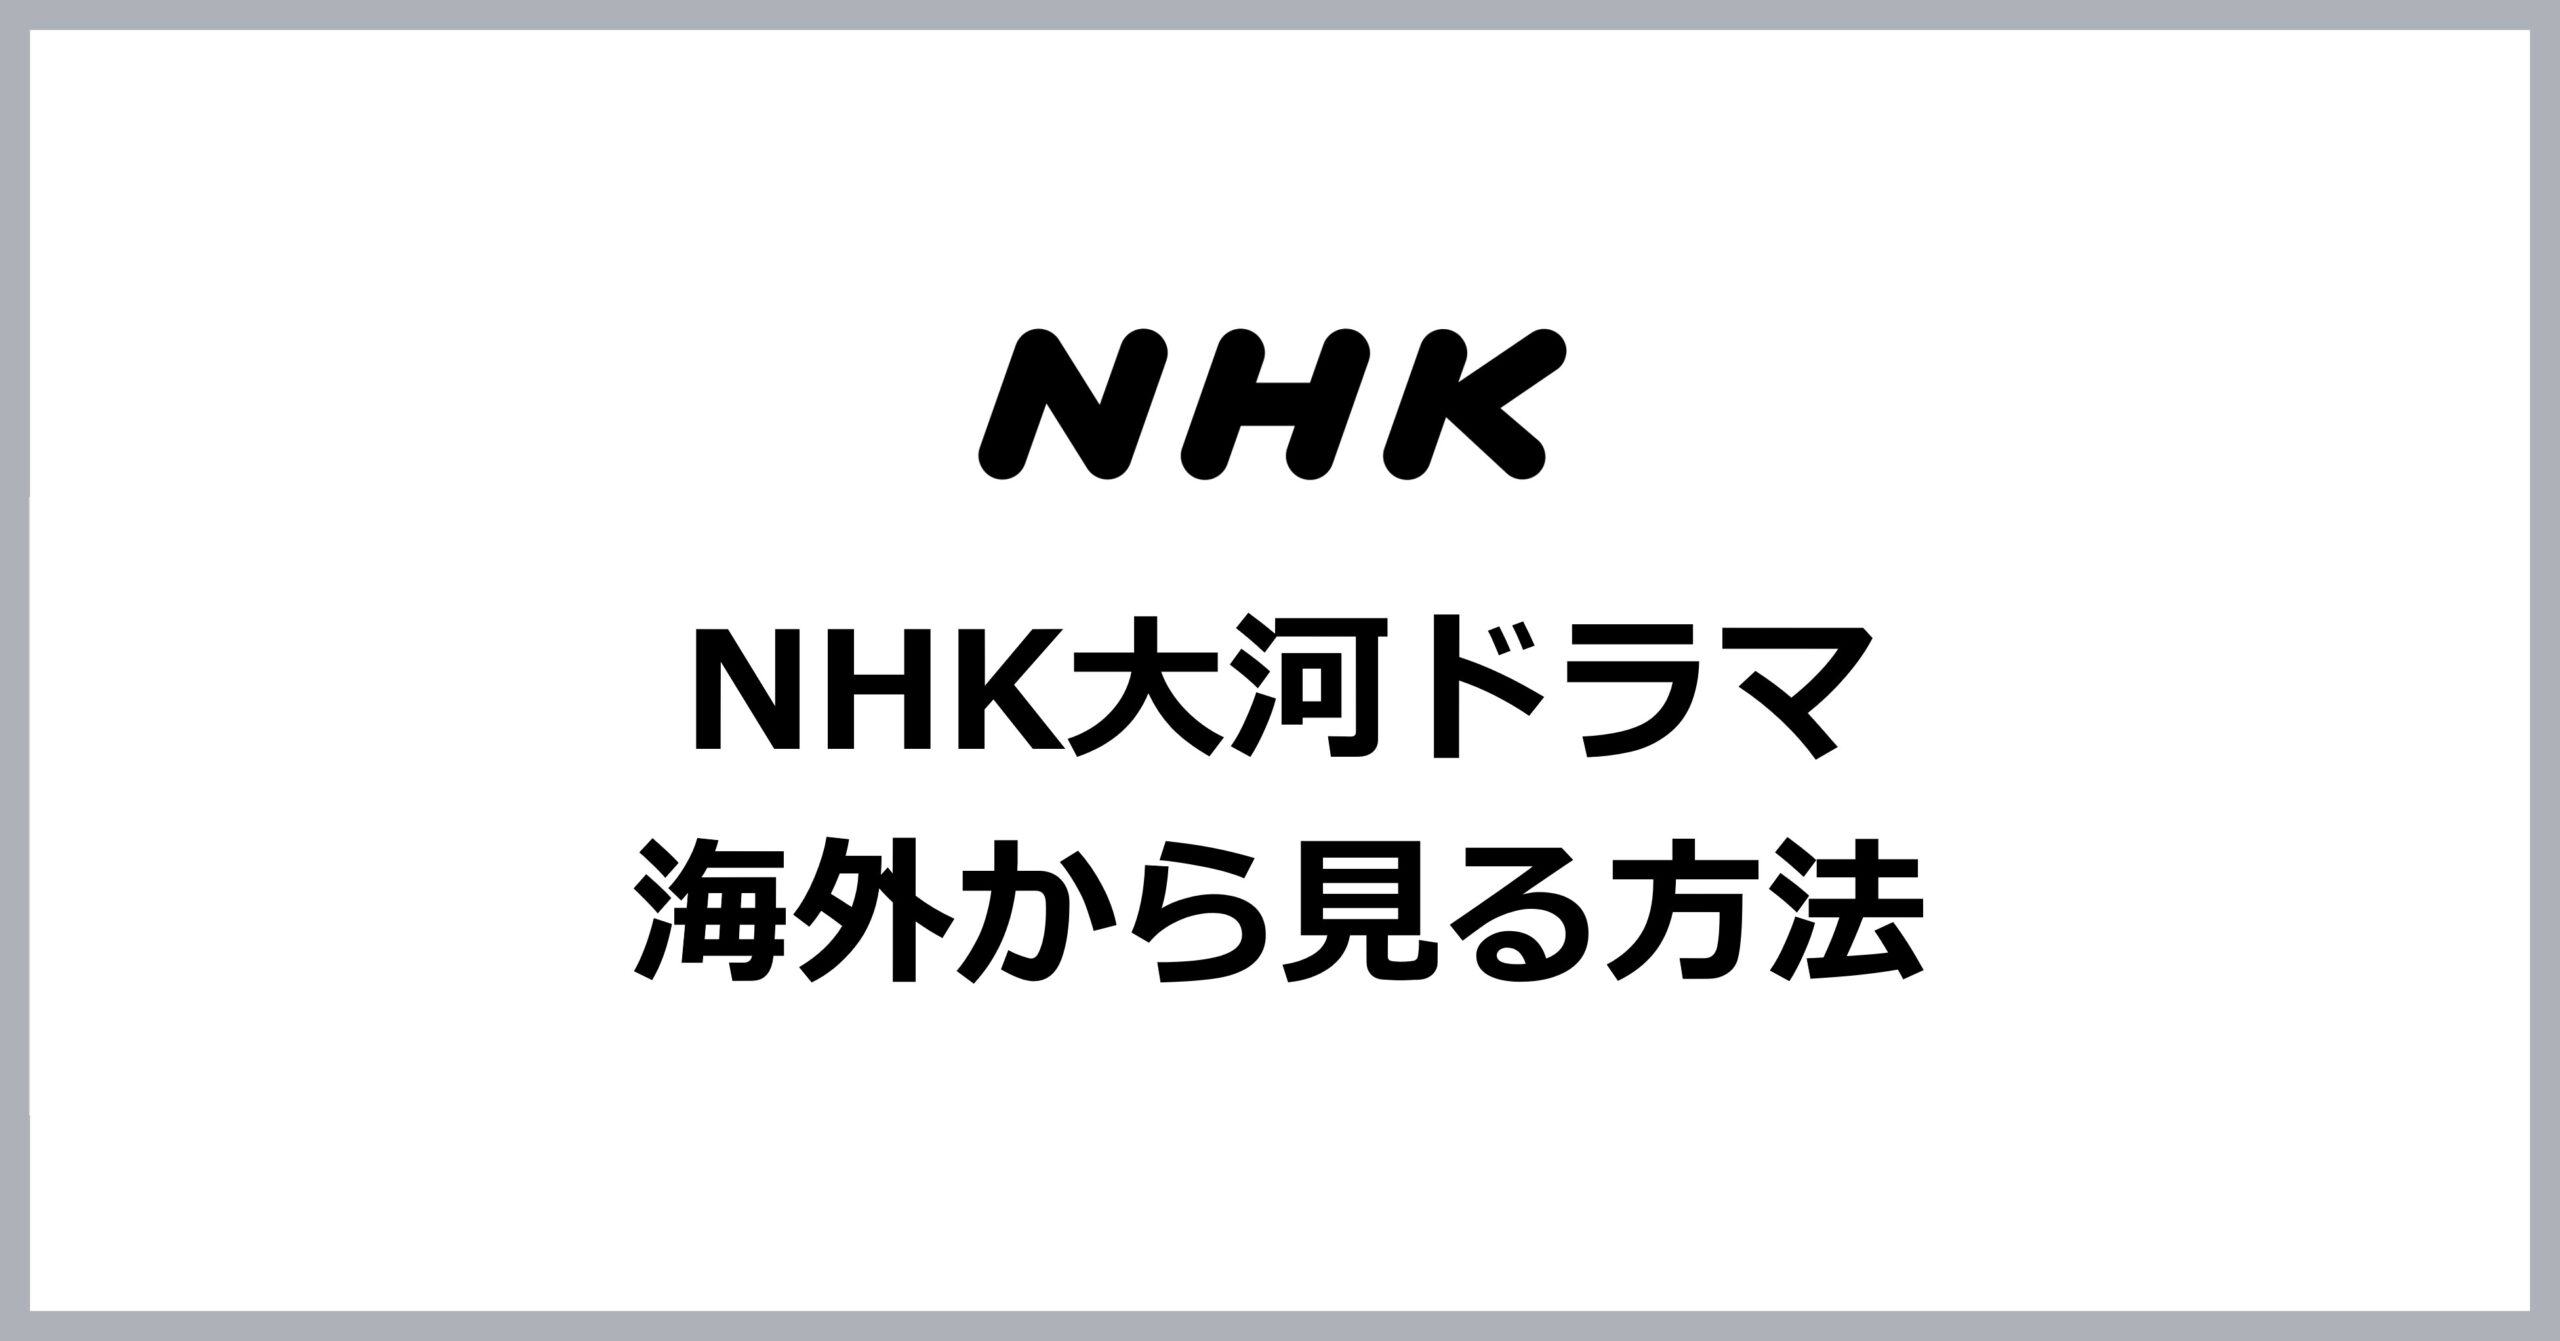 NHK大河ドラマを海外から見る方法